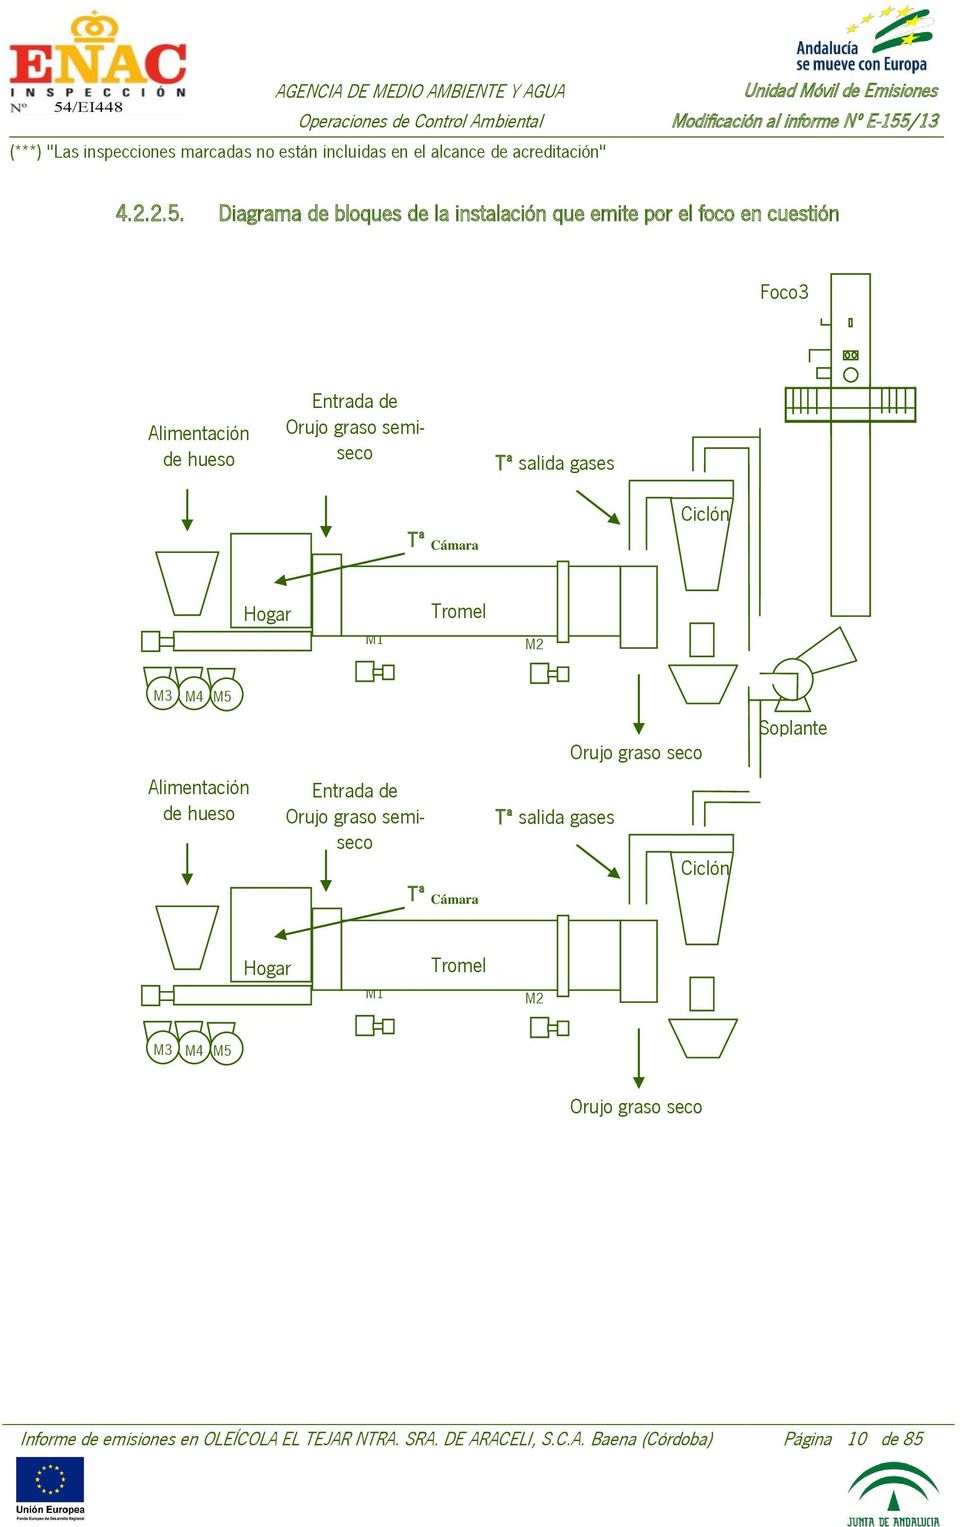 Diagrama de bloques de la instalación que emite por el foco en cuestión Foco3 Alimentación de hueso Entrada de Orujo graso